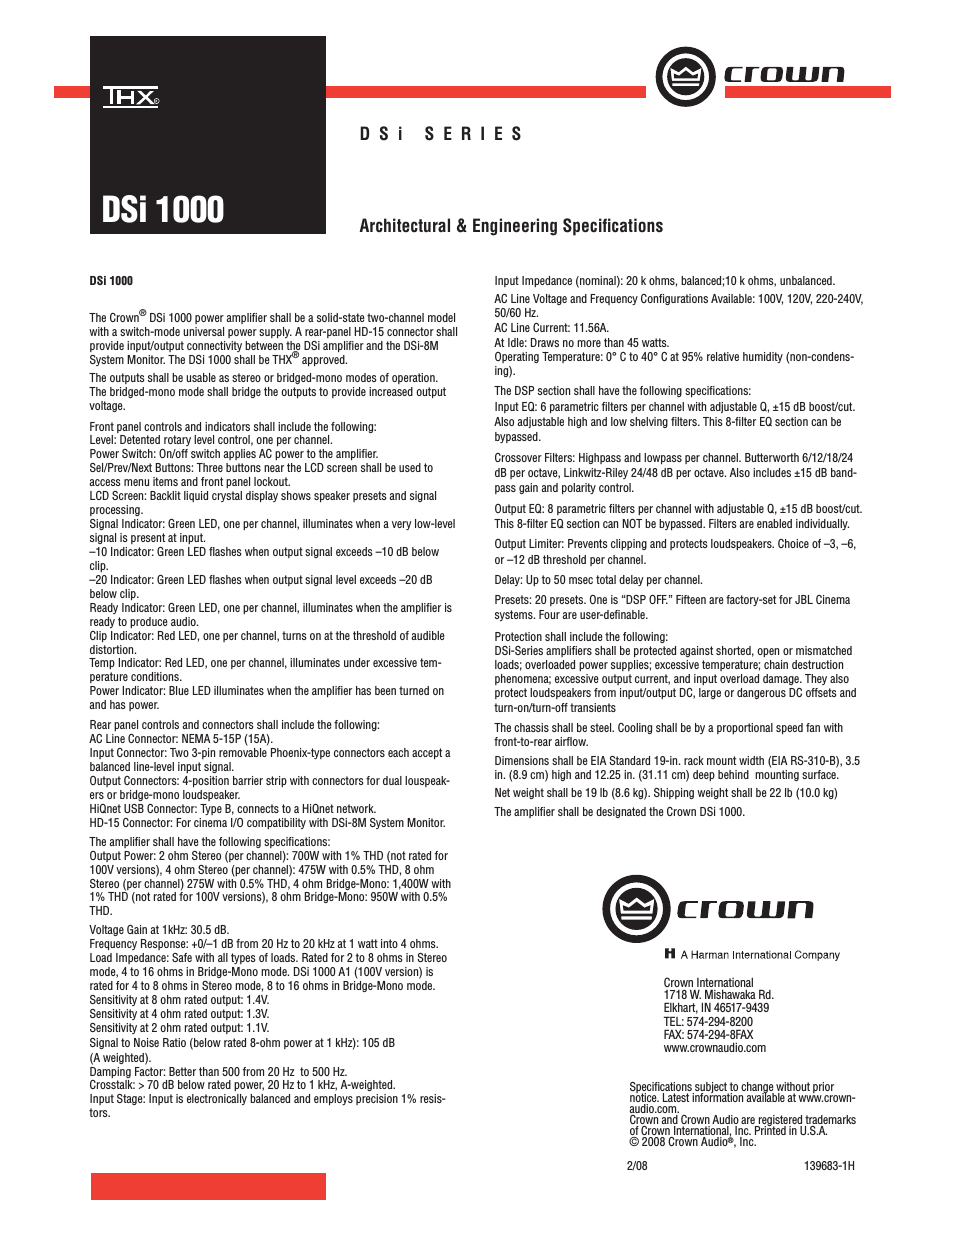 DSi 1000